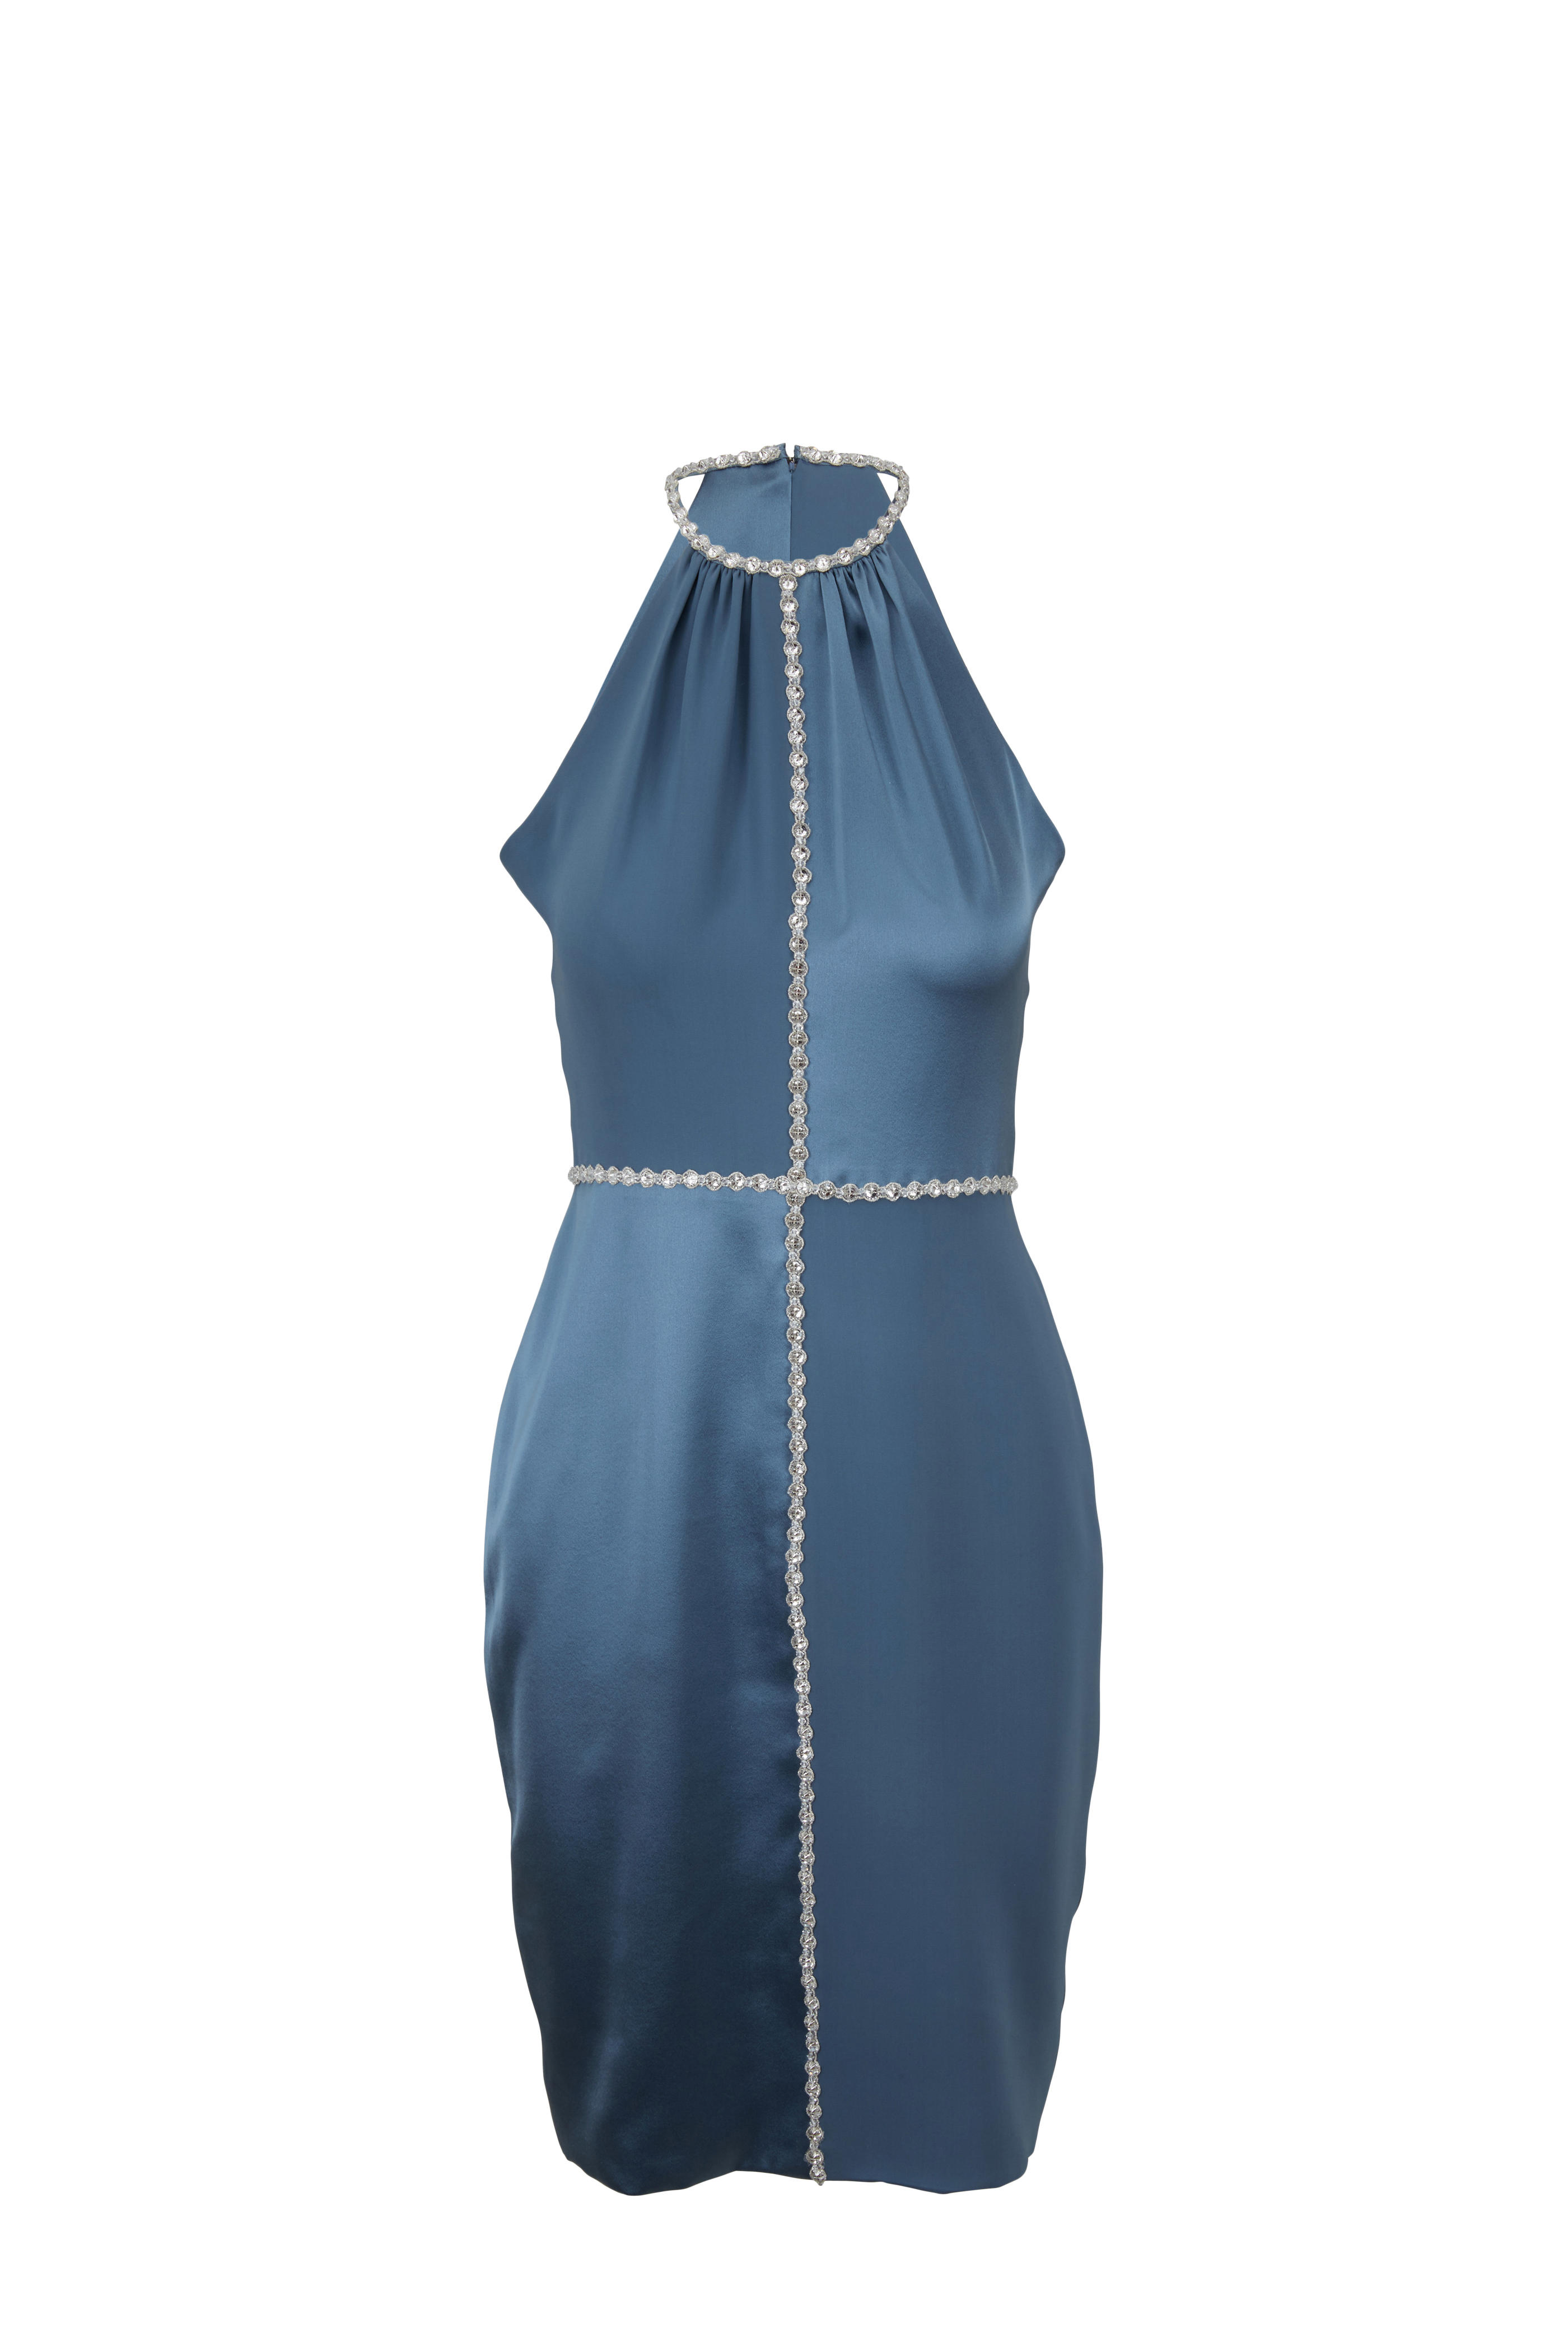 light blue halter dress